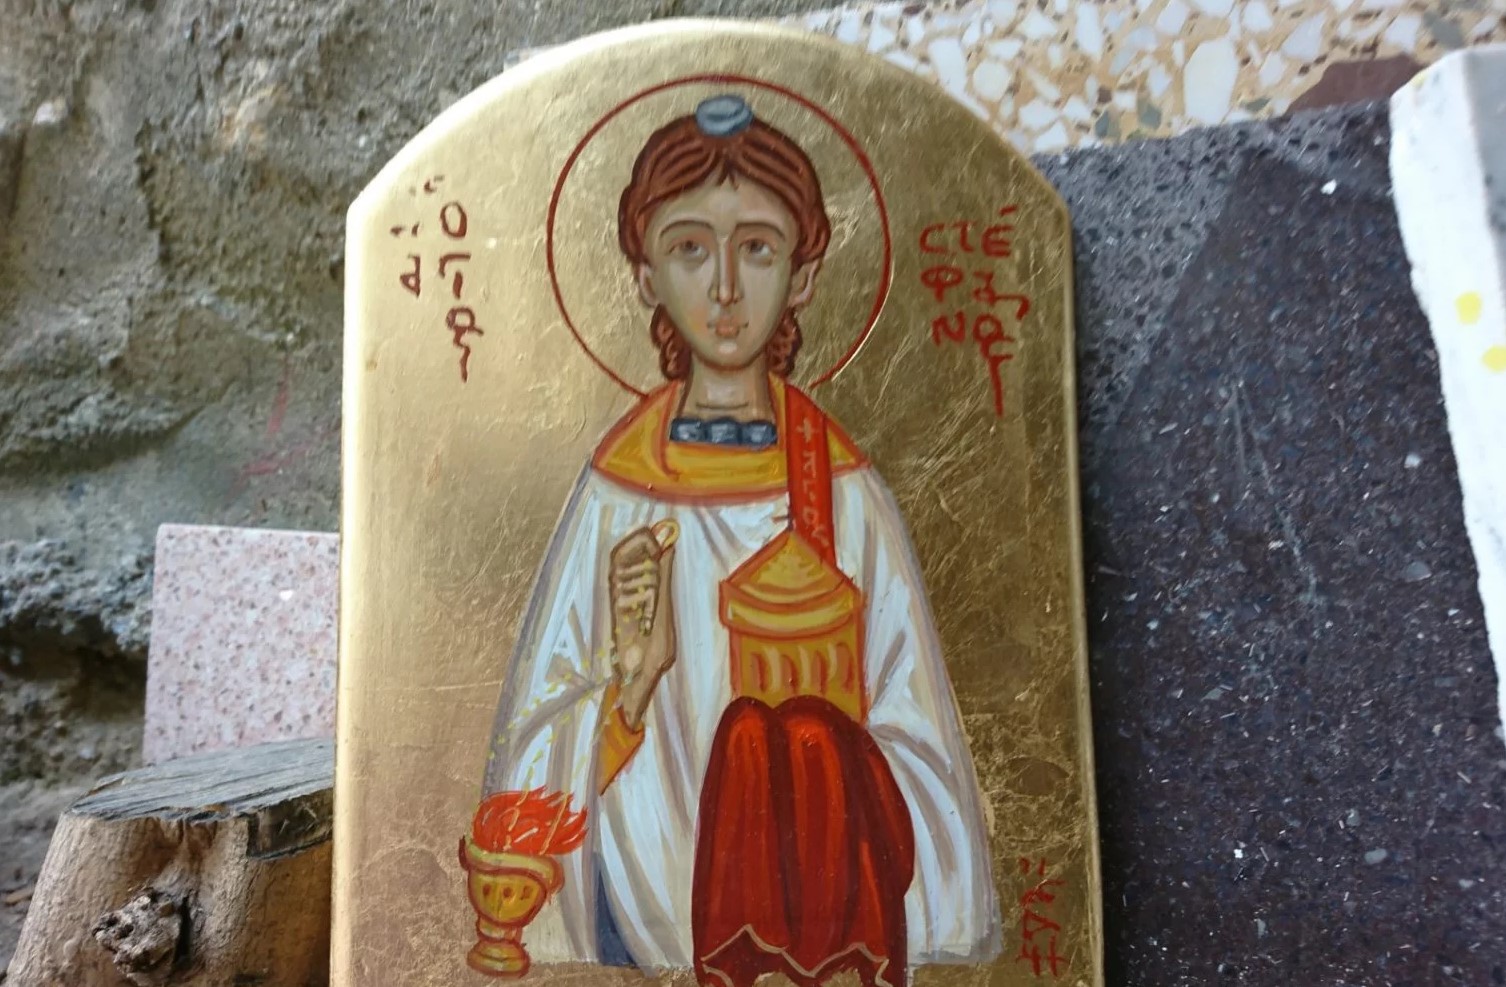 Άγιος Στέφανος: Ηρωικός βίος-μαρτυρικός θάνατος-Μεγάλη γιορτή της ορθοδοξίας σήμερα 27 Δεκεμβρίου